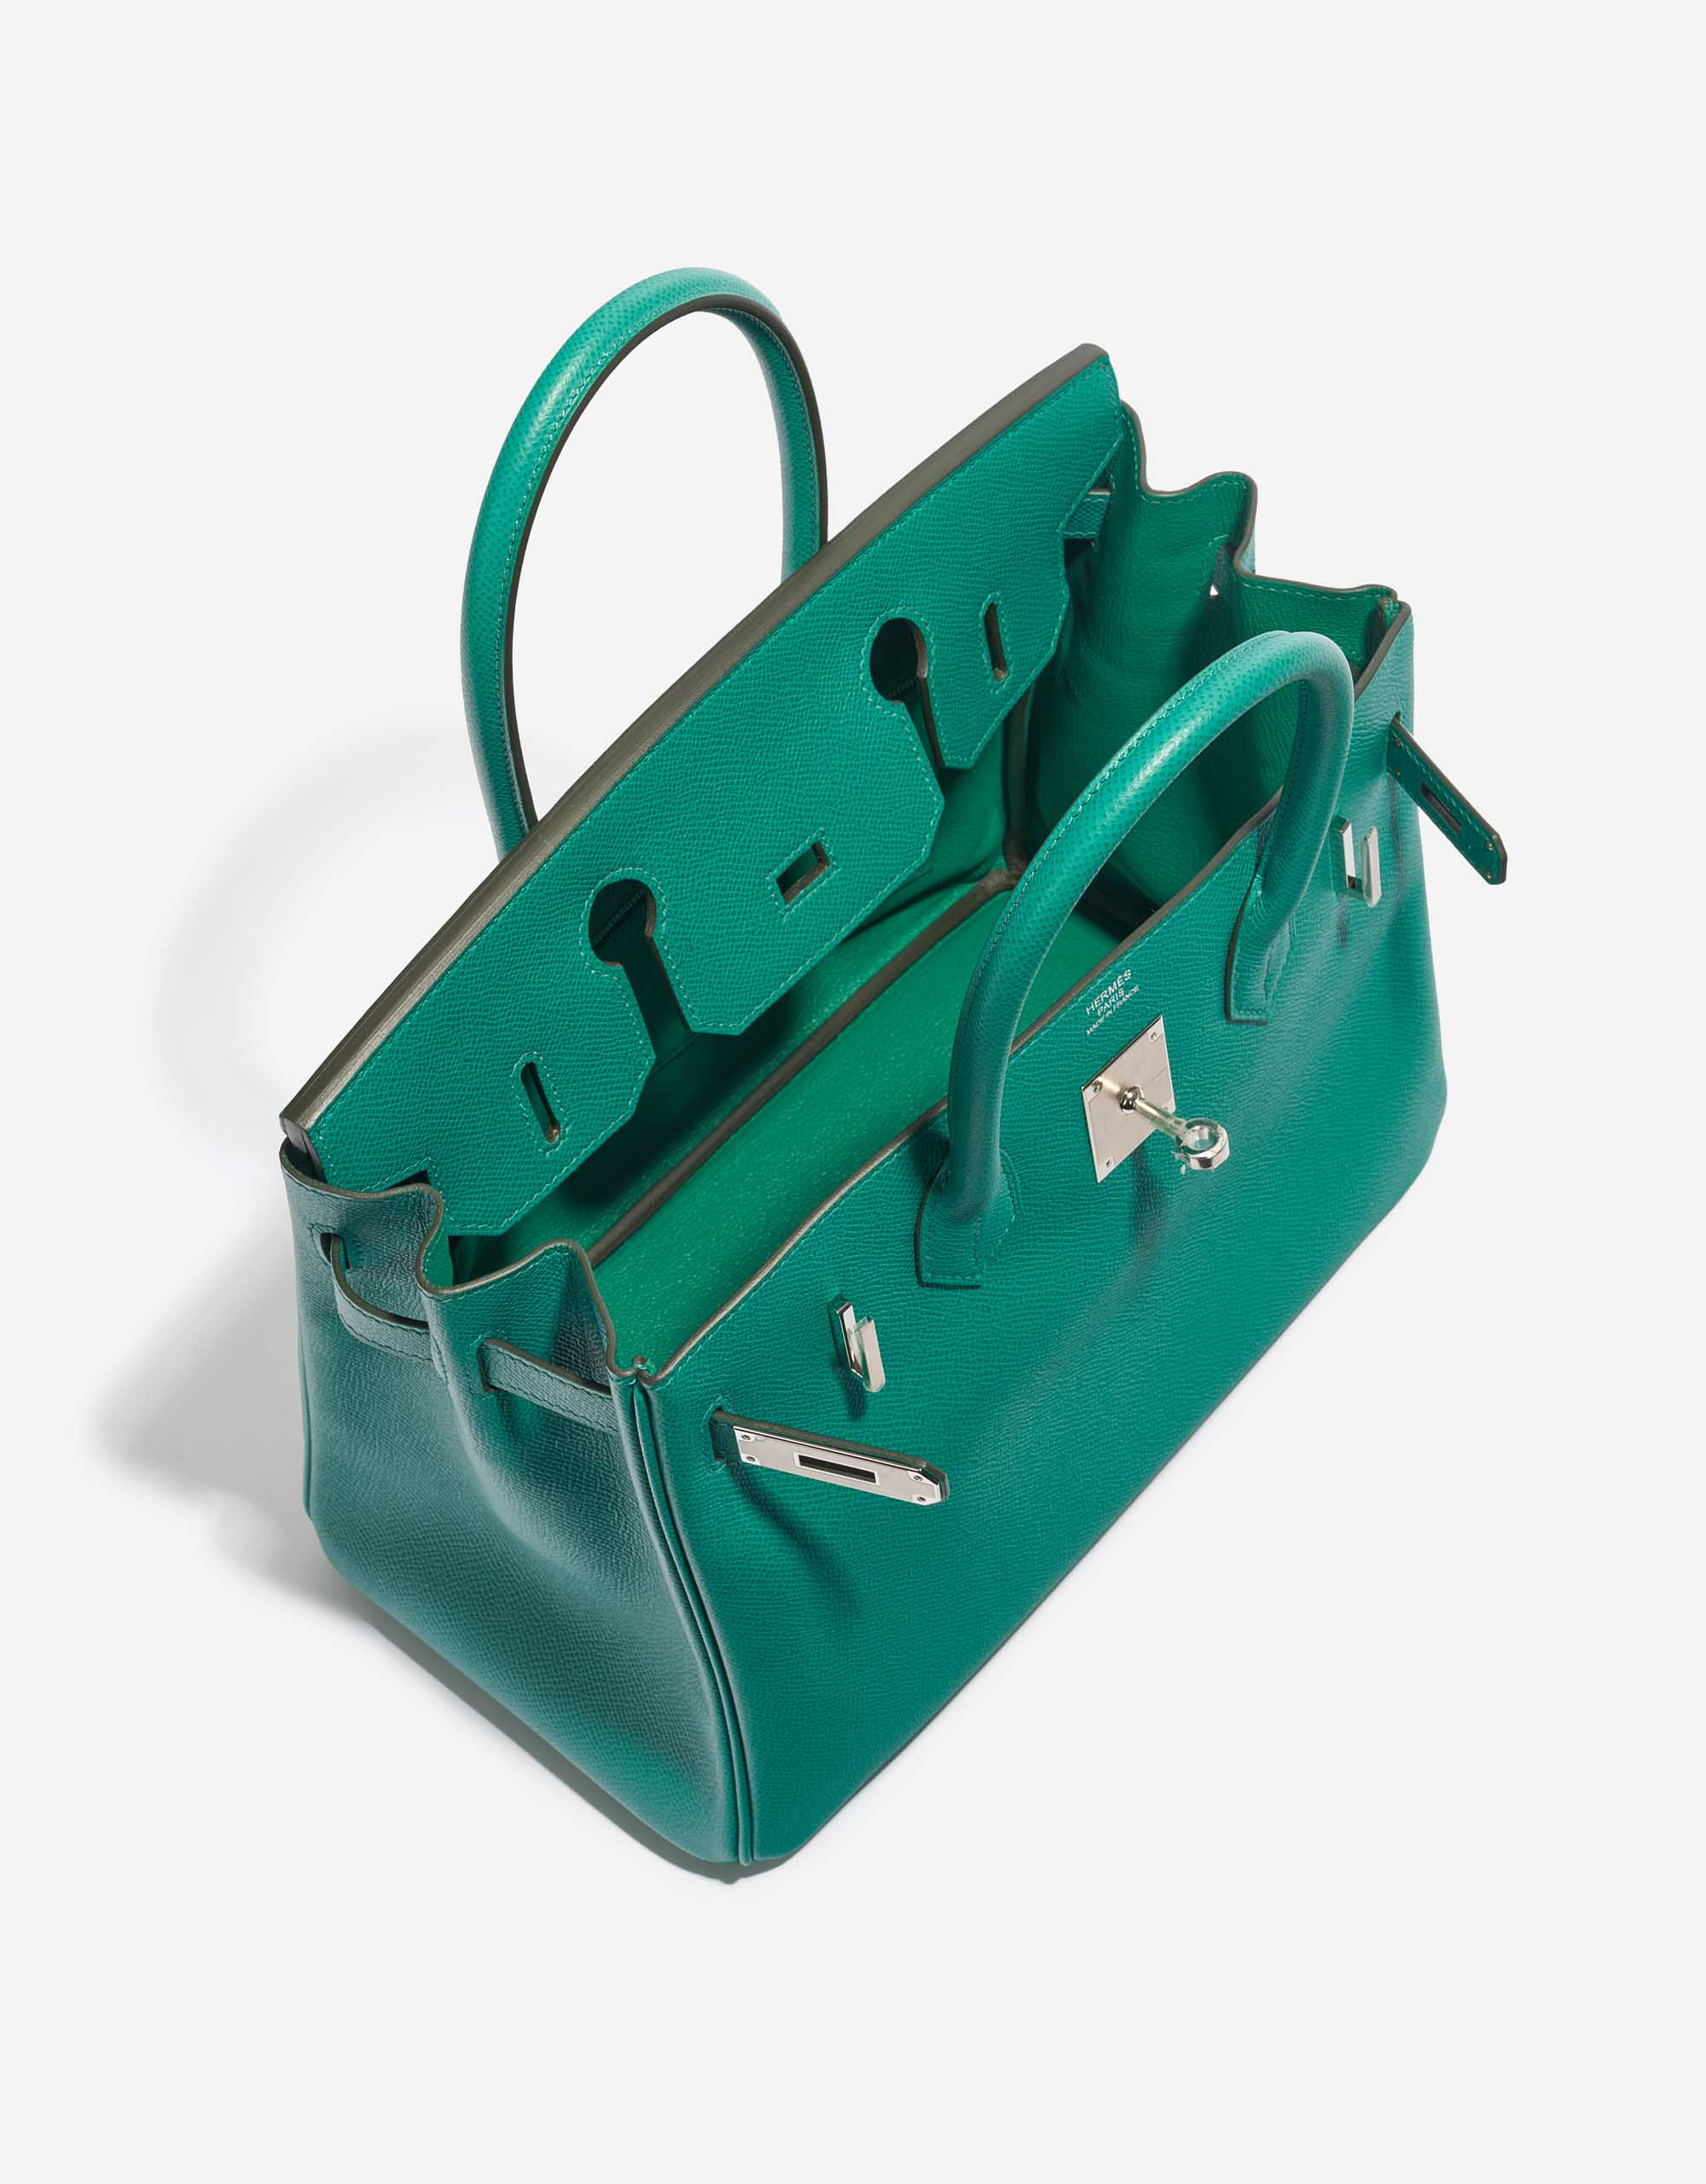 Pre-owned Hermès Tasche Birkin 30 Epsom Vert Jade Green Inside | Verkaufen Sie Ihre Designer-Tasche auf Saclab.com